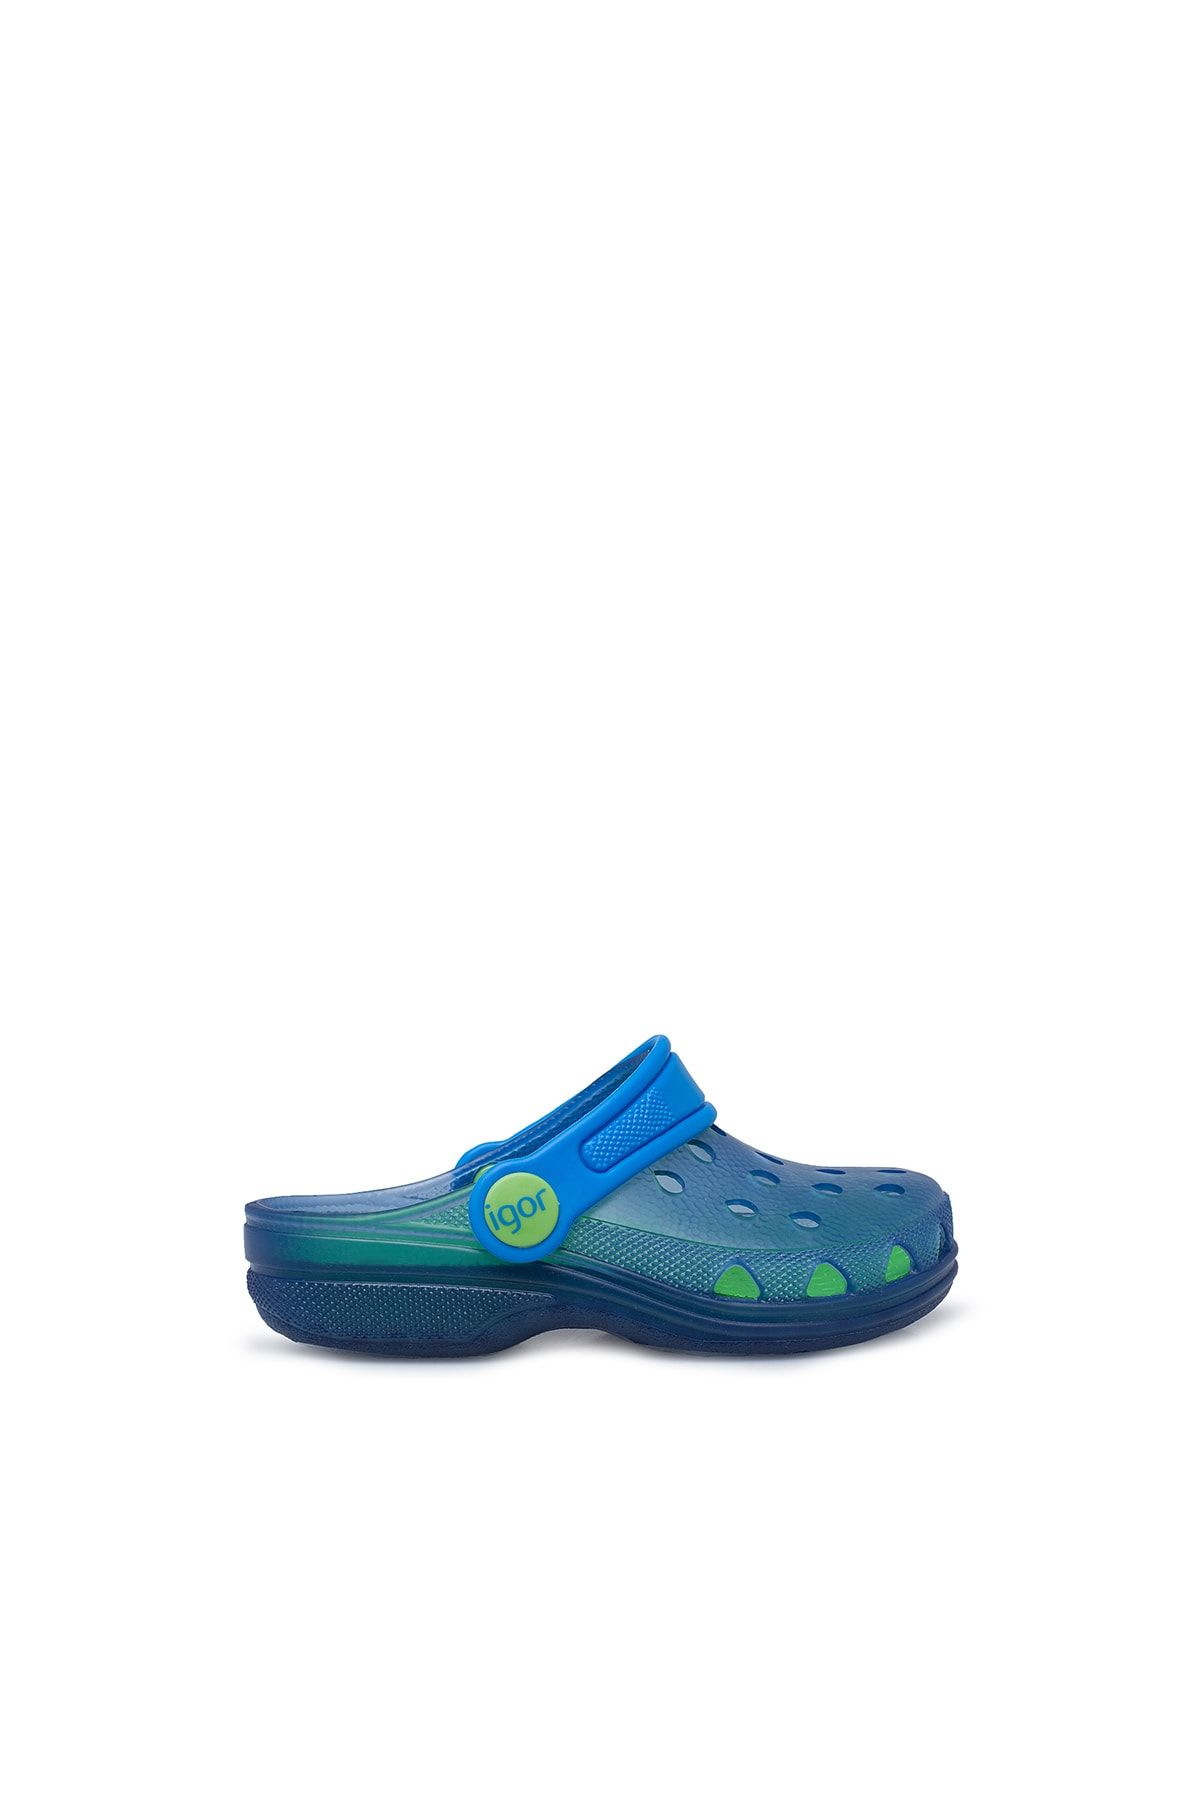 IGOR Poppy Kaydırmaz Havuz Ve Deniz Ayakkabı Unısex Ayakkabı S10116 U